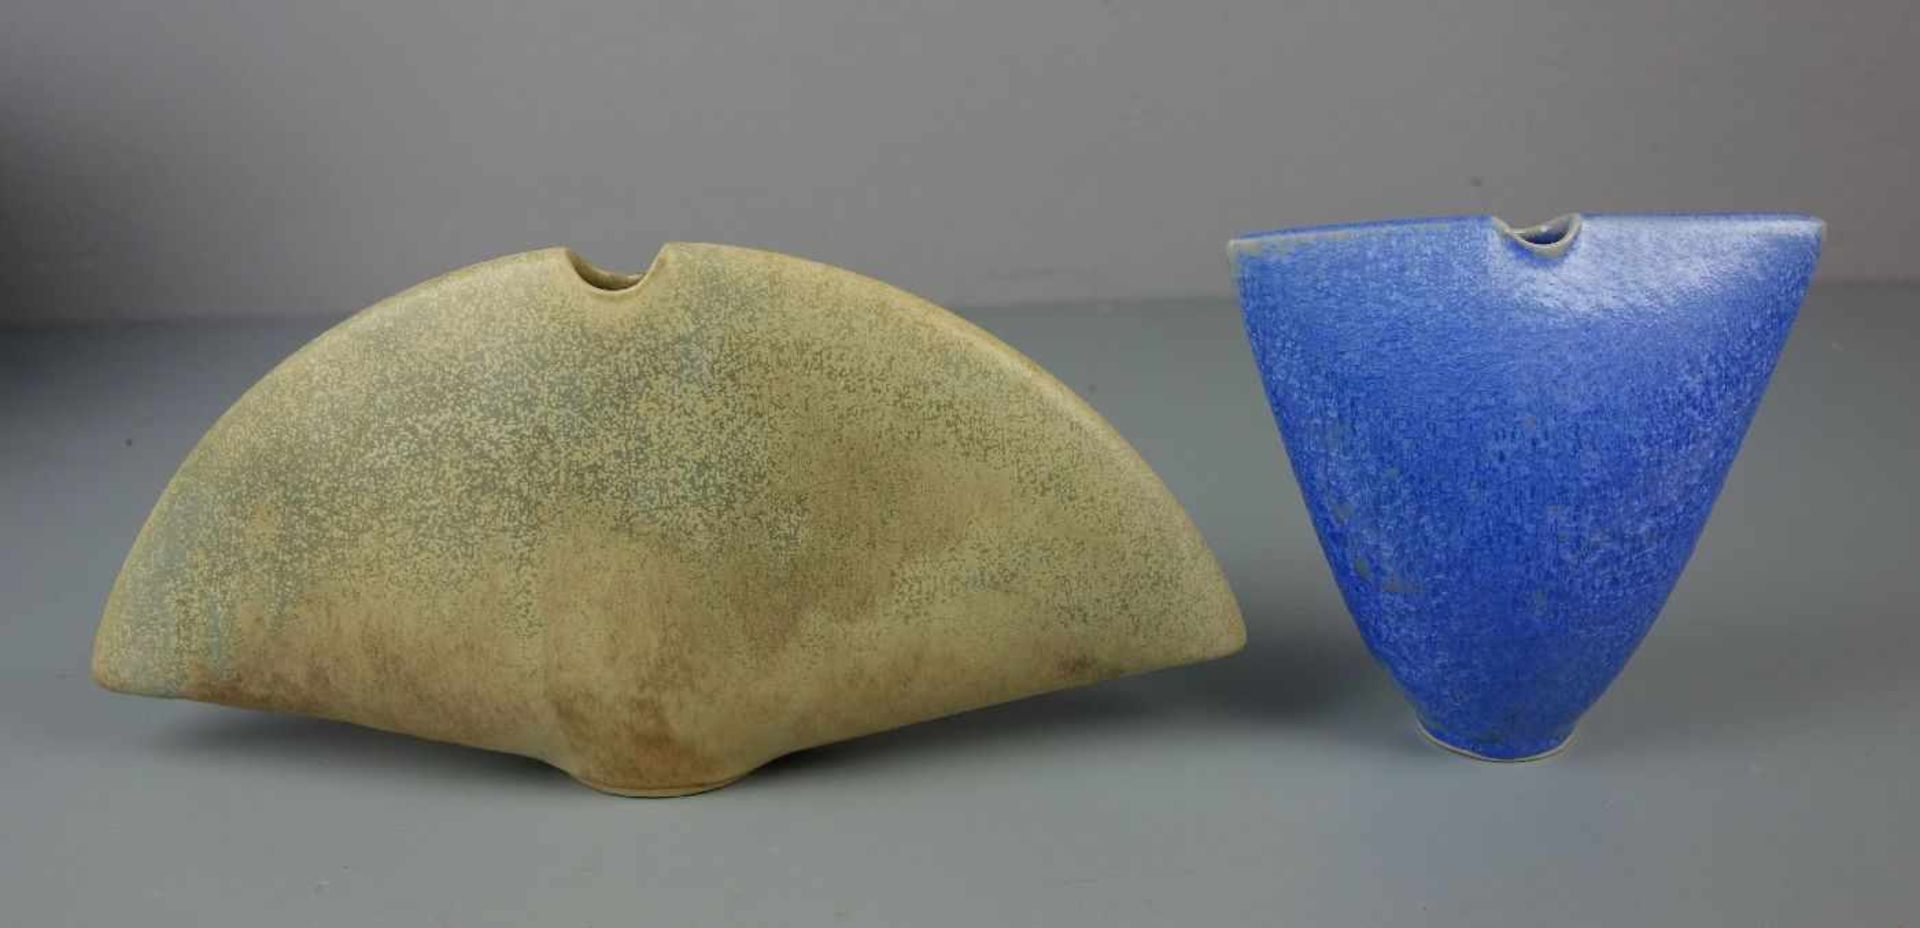 PAAR INGRID RIPKE-BOLINIUS - VASEN (deutsche Keramikerin in Worpswede), Keramik, heller Scherben, - Bild 3 aus 4